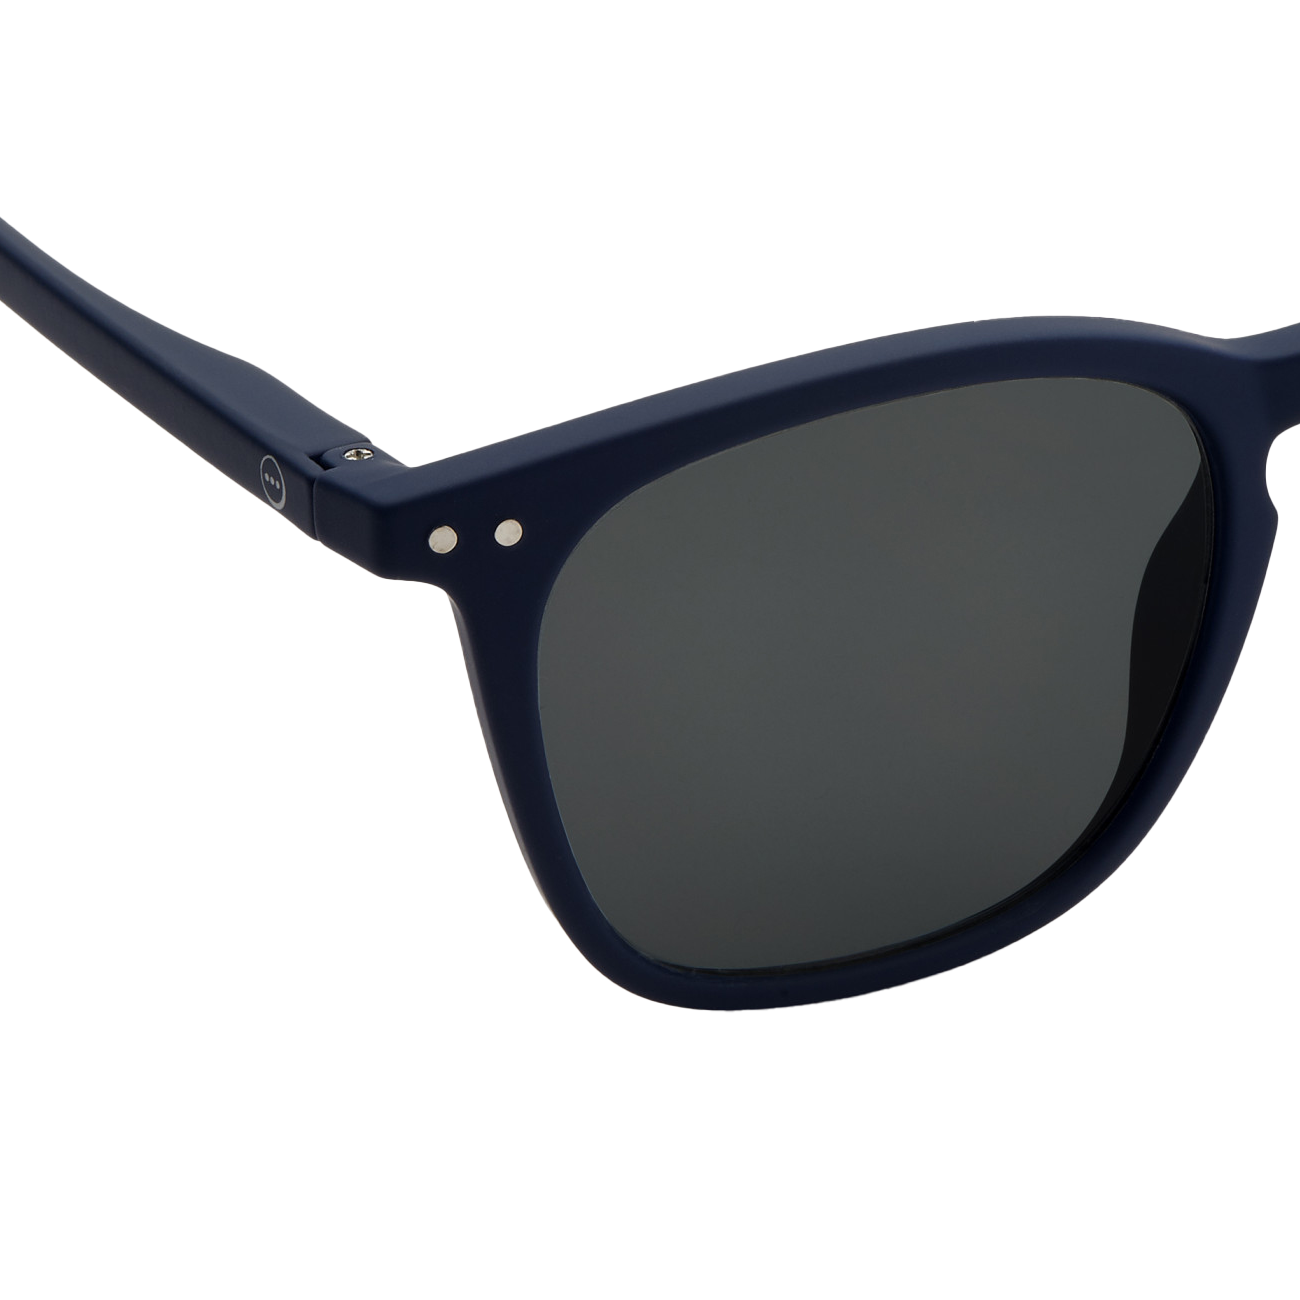 Sunglasses #E - Navy Blue